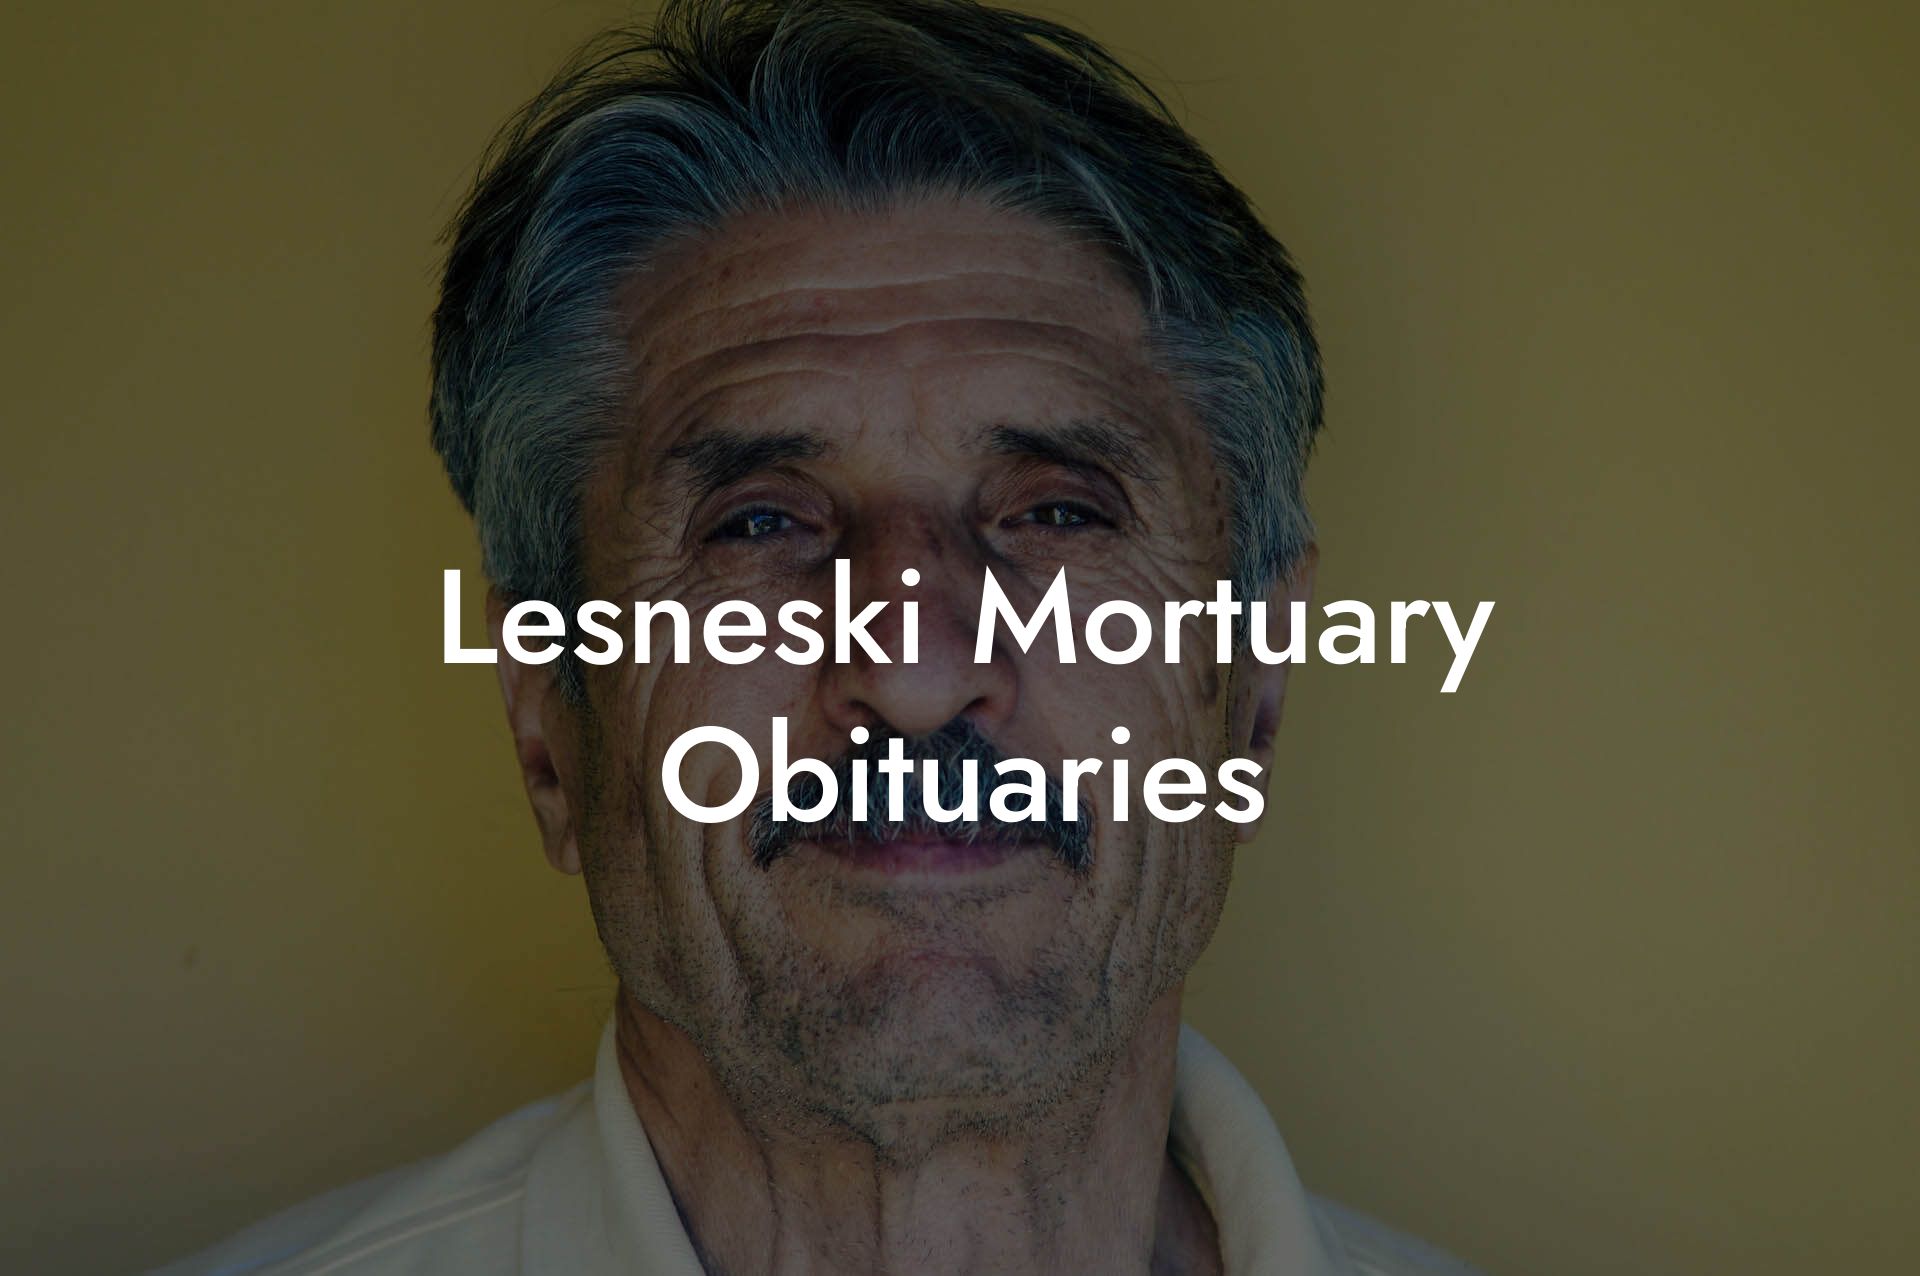 Lesneski Mortuary Obituaries